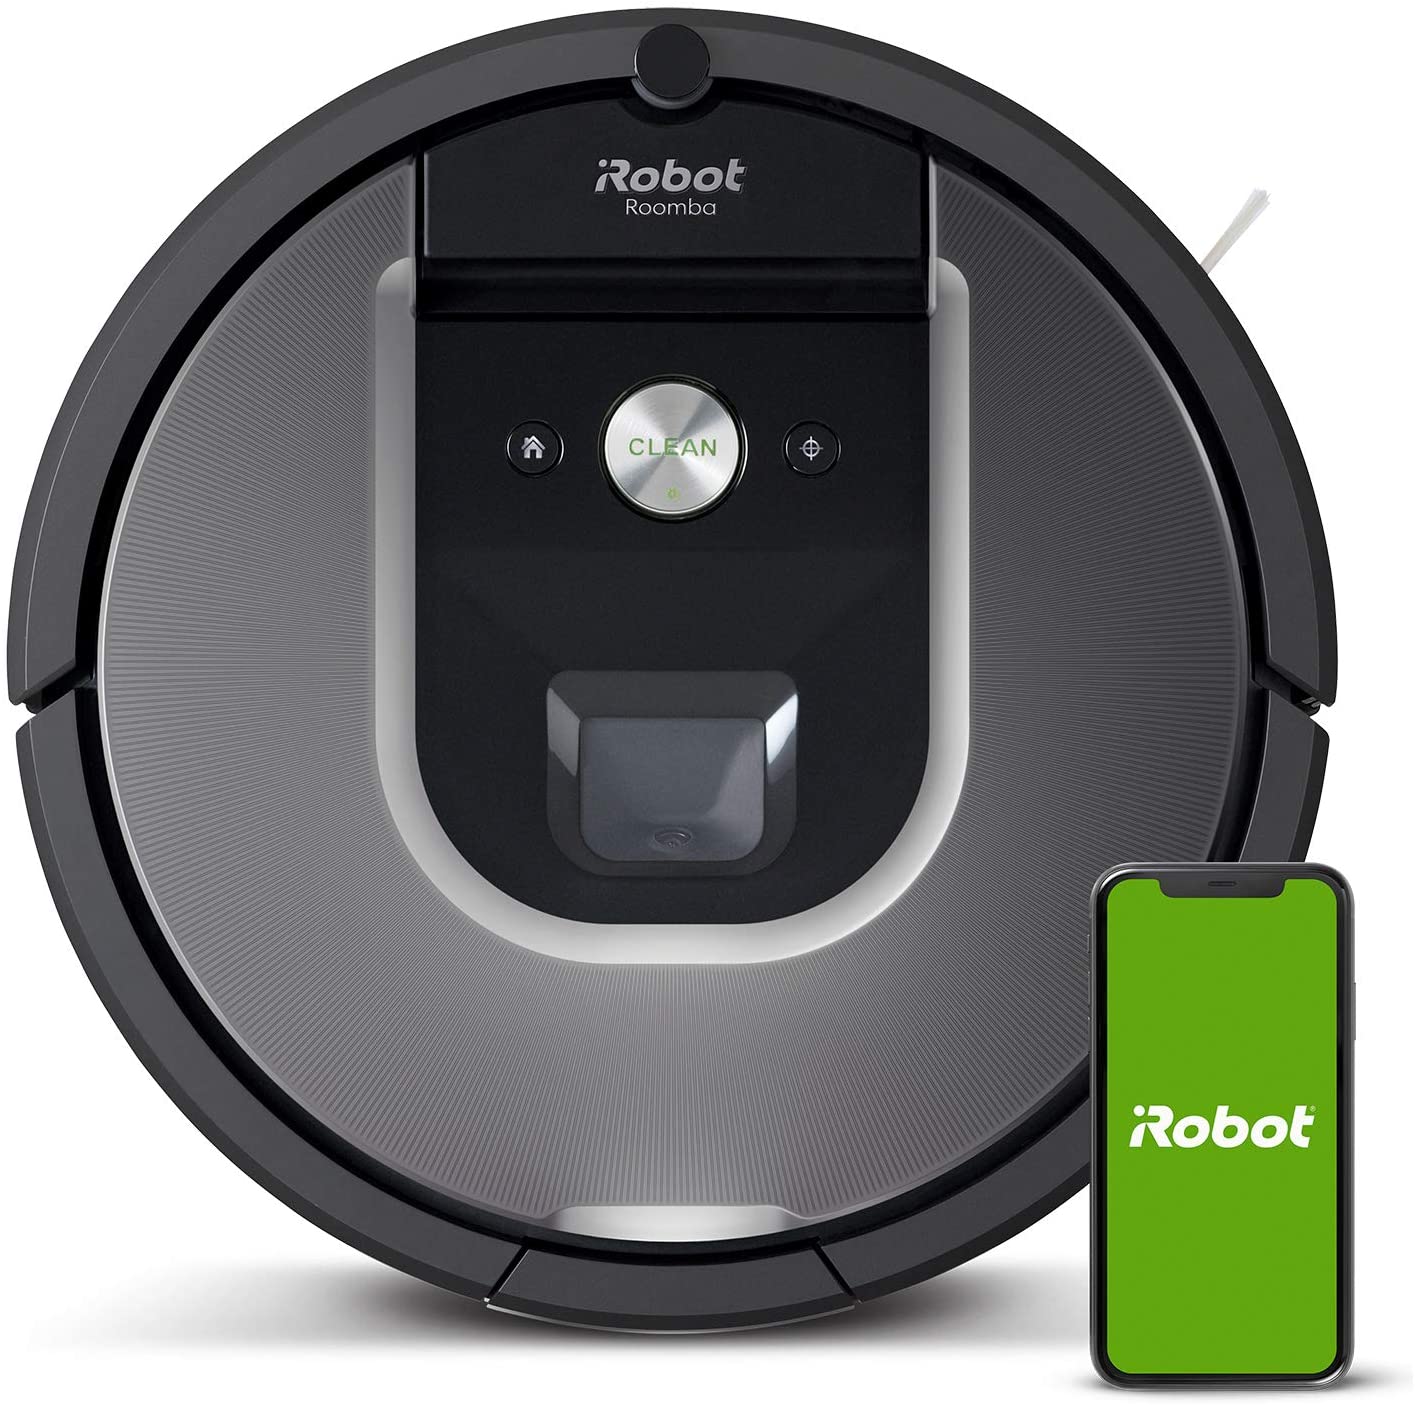 Roomba 960 vs Roomba i7 (i7+)